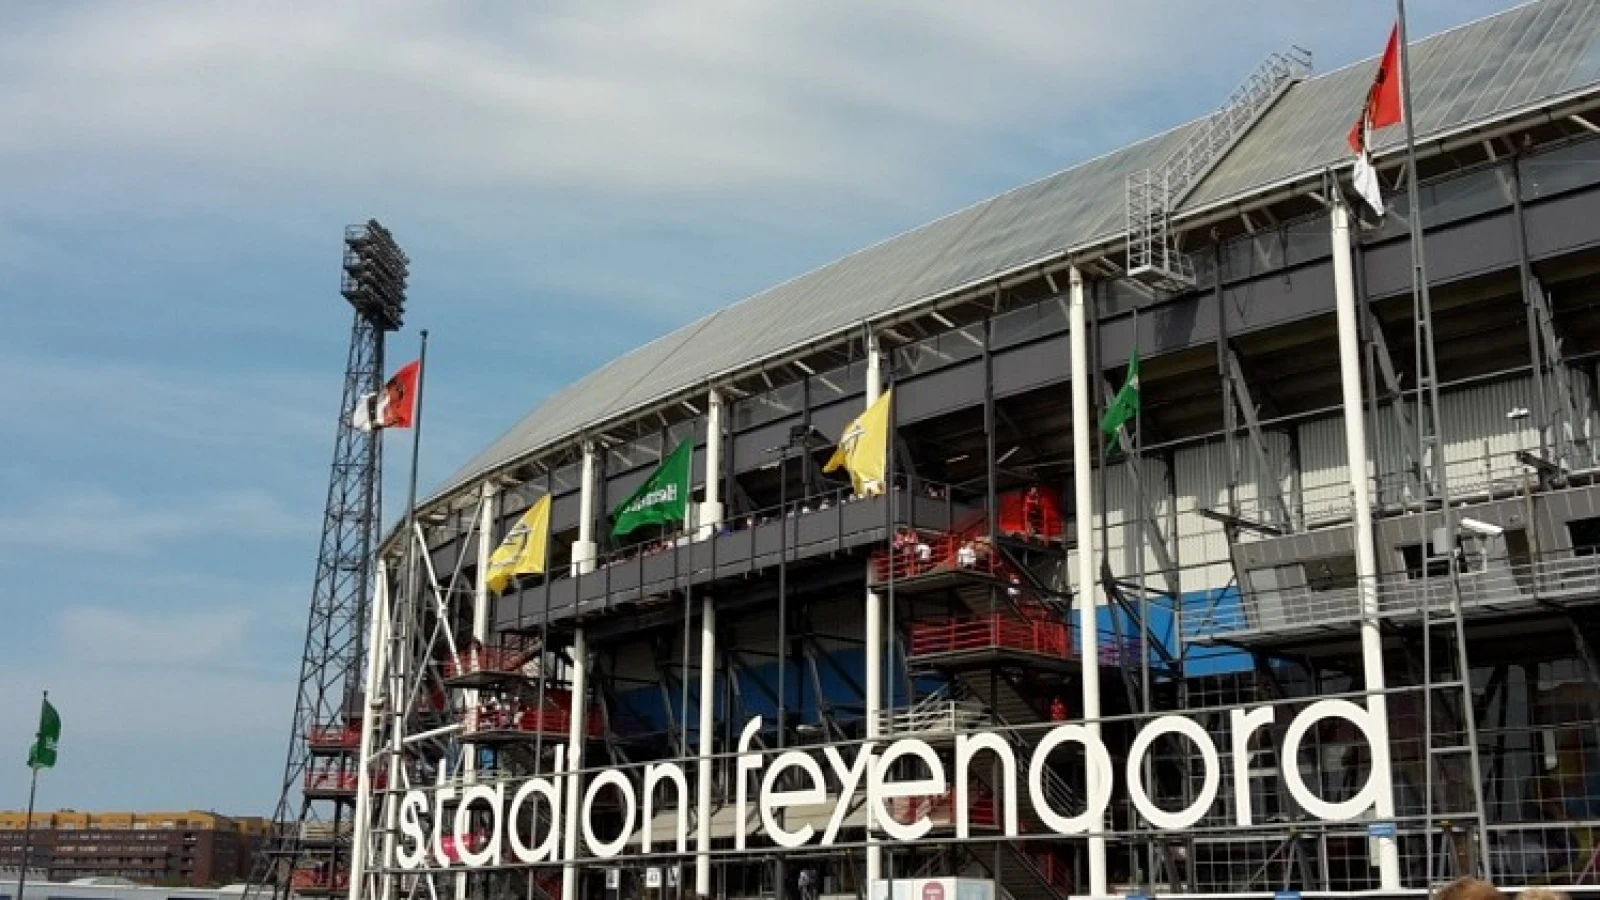 VIDEO | Bekerfinale Feyenoord O/19 - PSV O/19: Alle doelpunten en de 'vechtpartij'